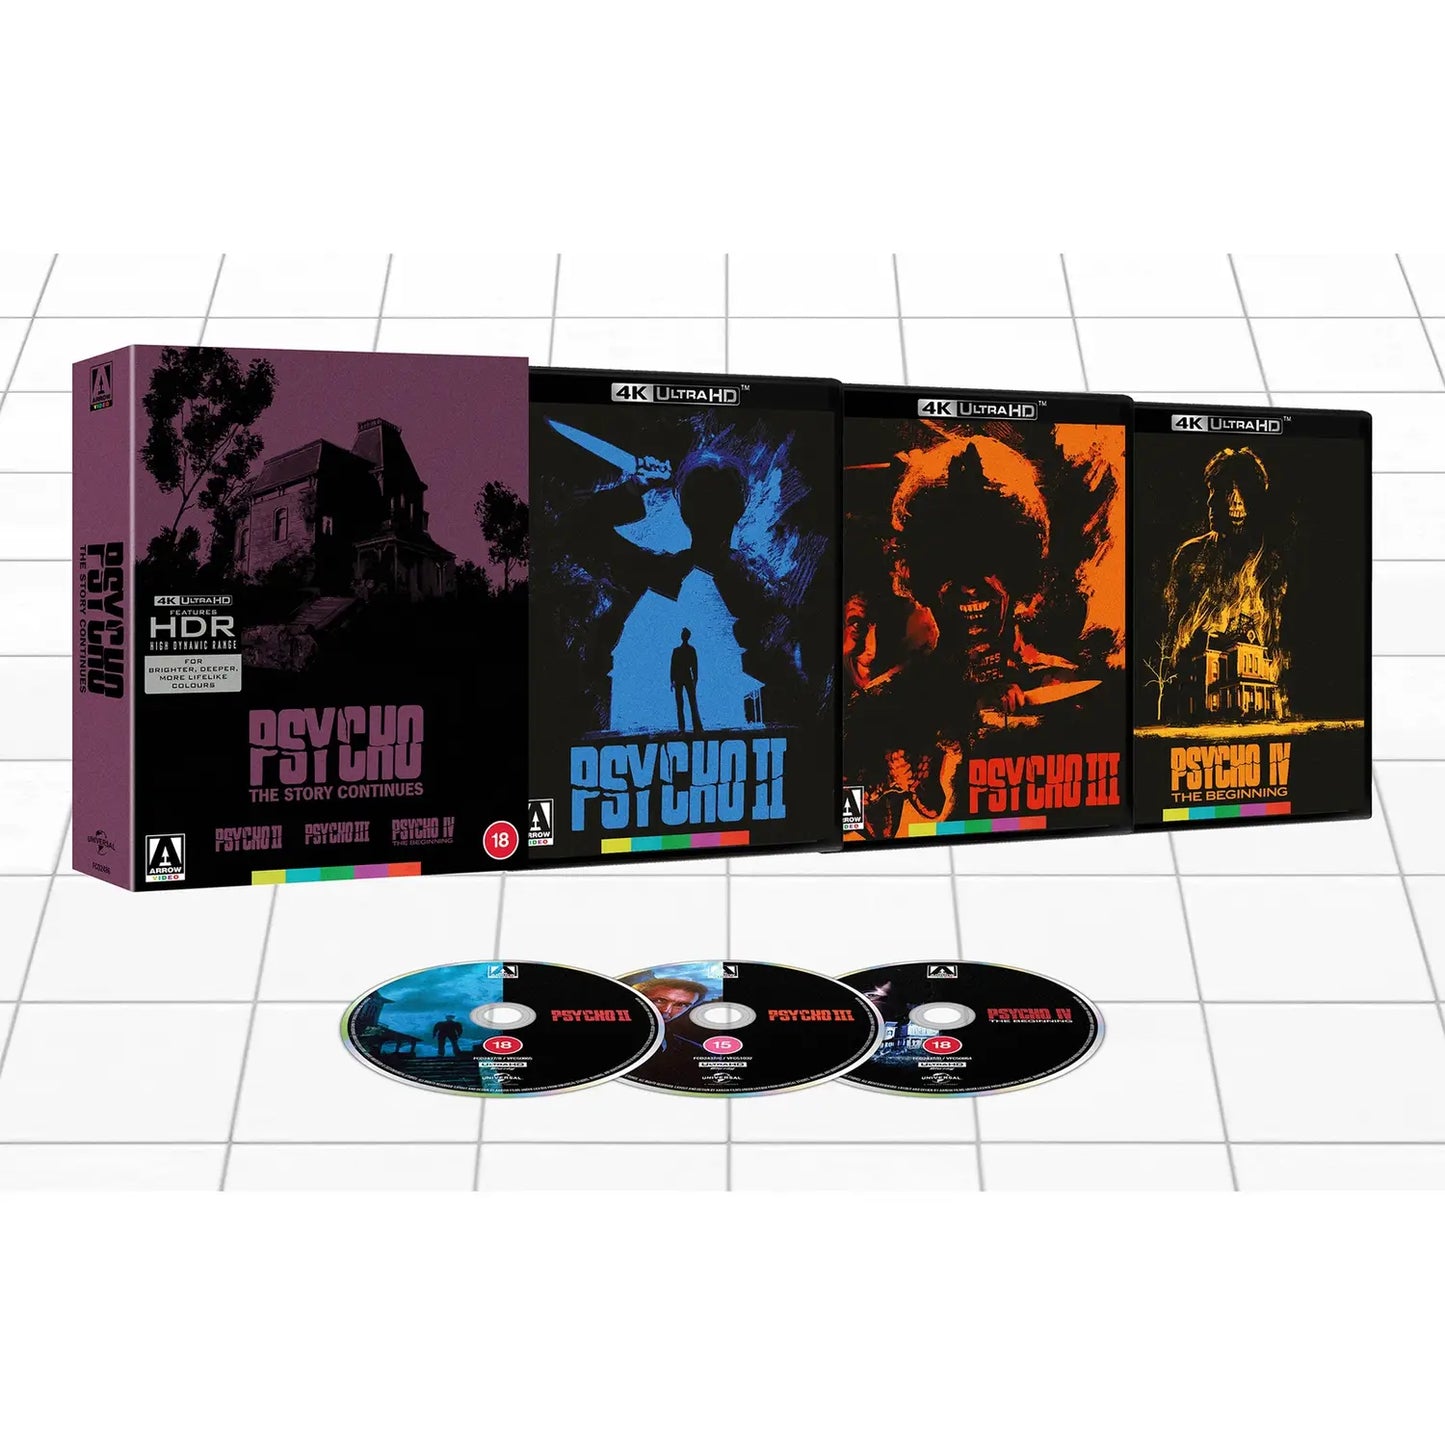 Psycho - The Story Continues (Psycho II, III, & IV) 4K UHD (Arrow UK)